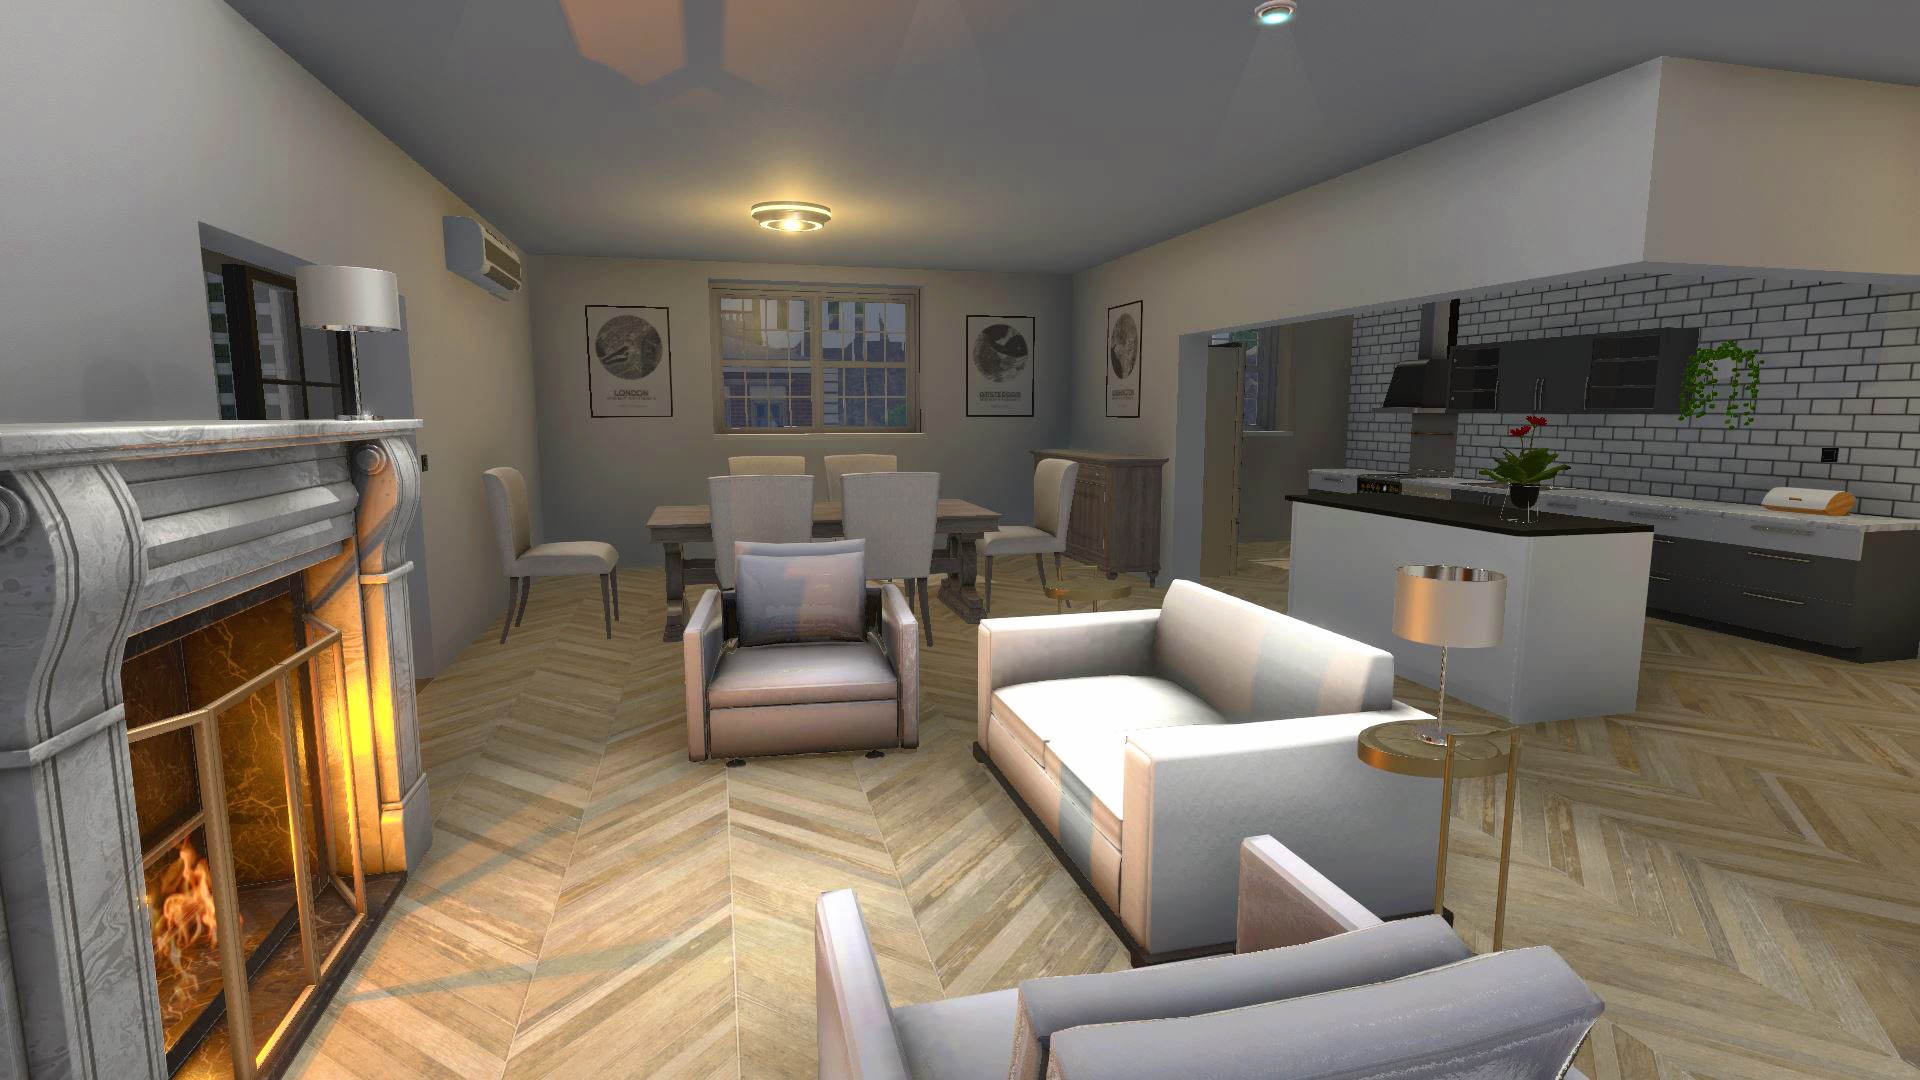 House Flipper: simulador de 'arrumar casa' ganha nova expansão